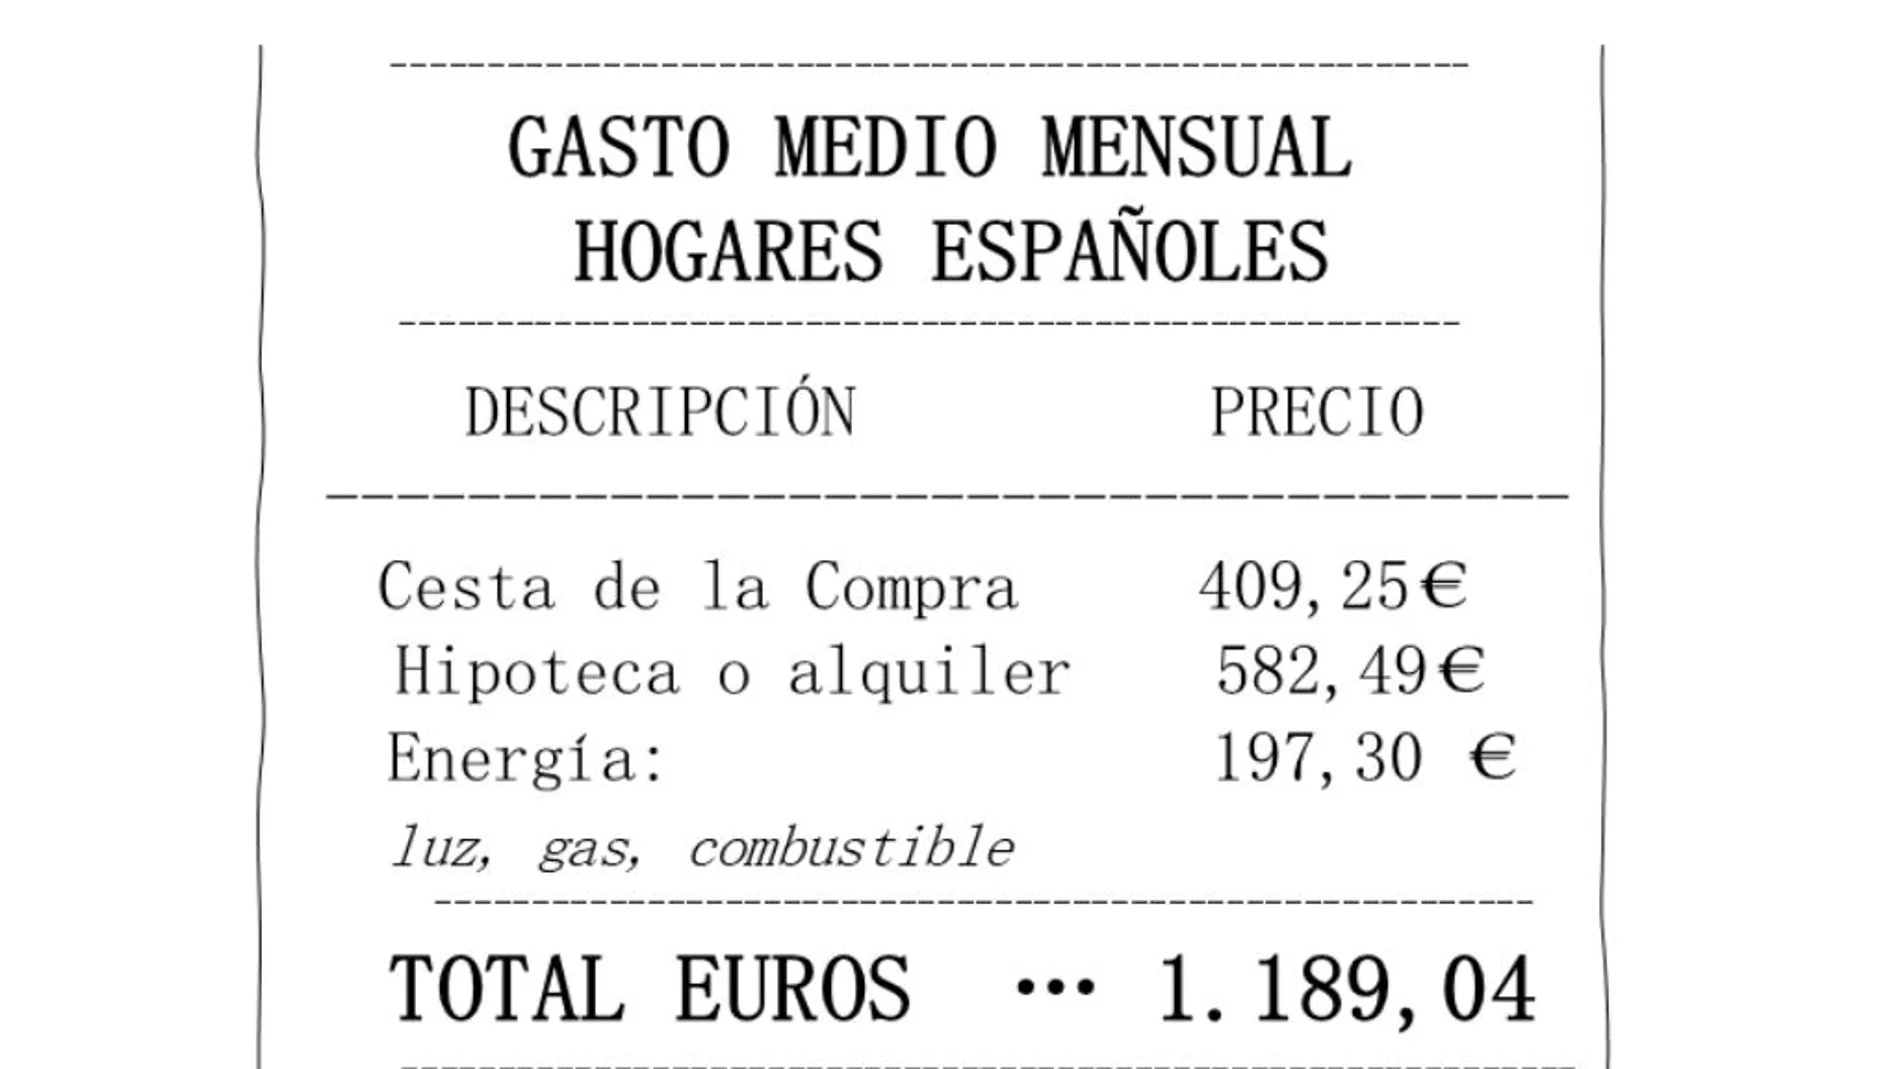 Gasto medio mensual de los hogares españoles